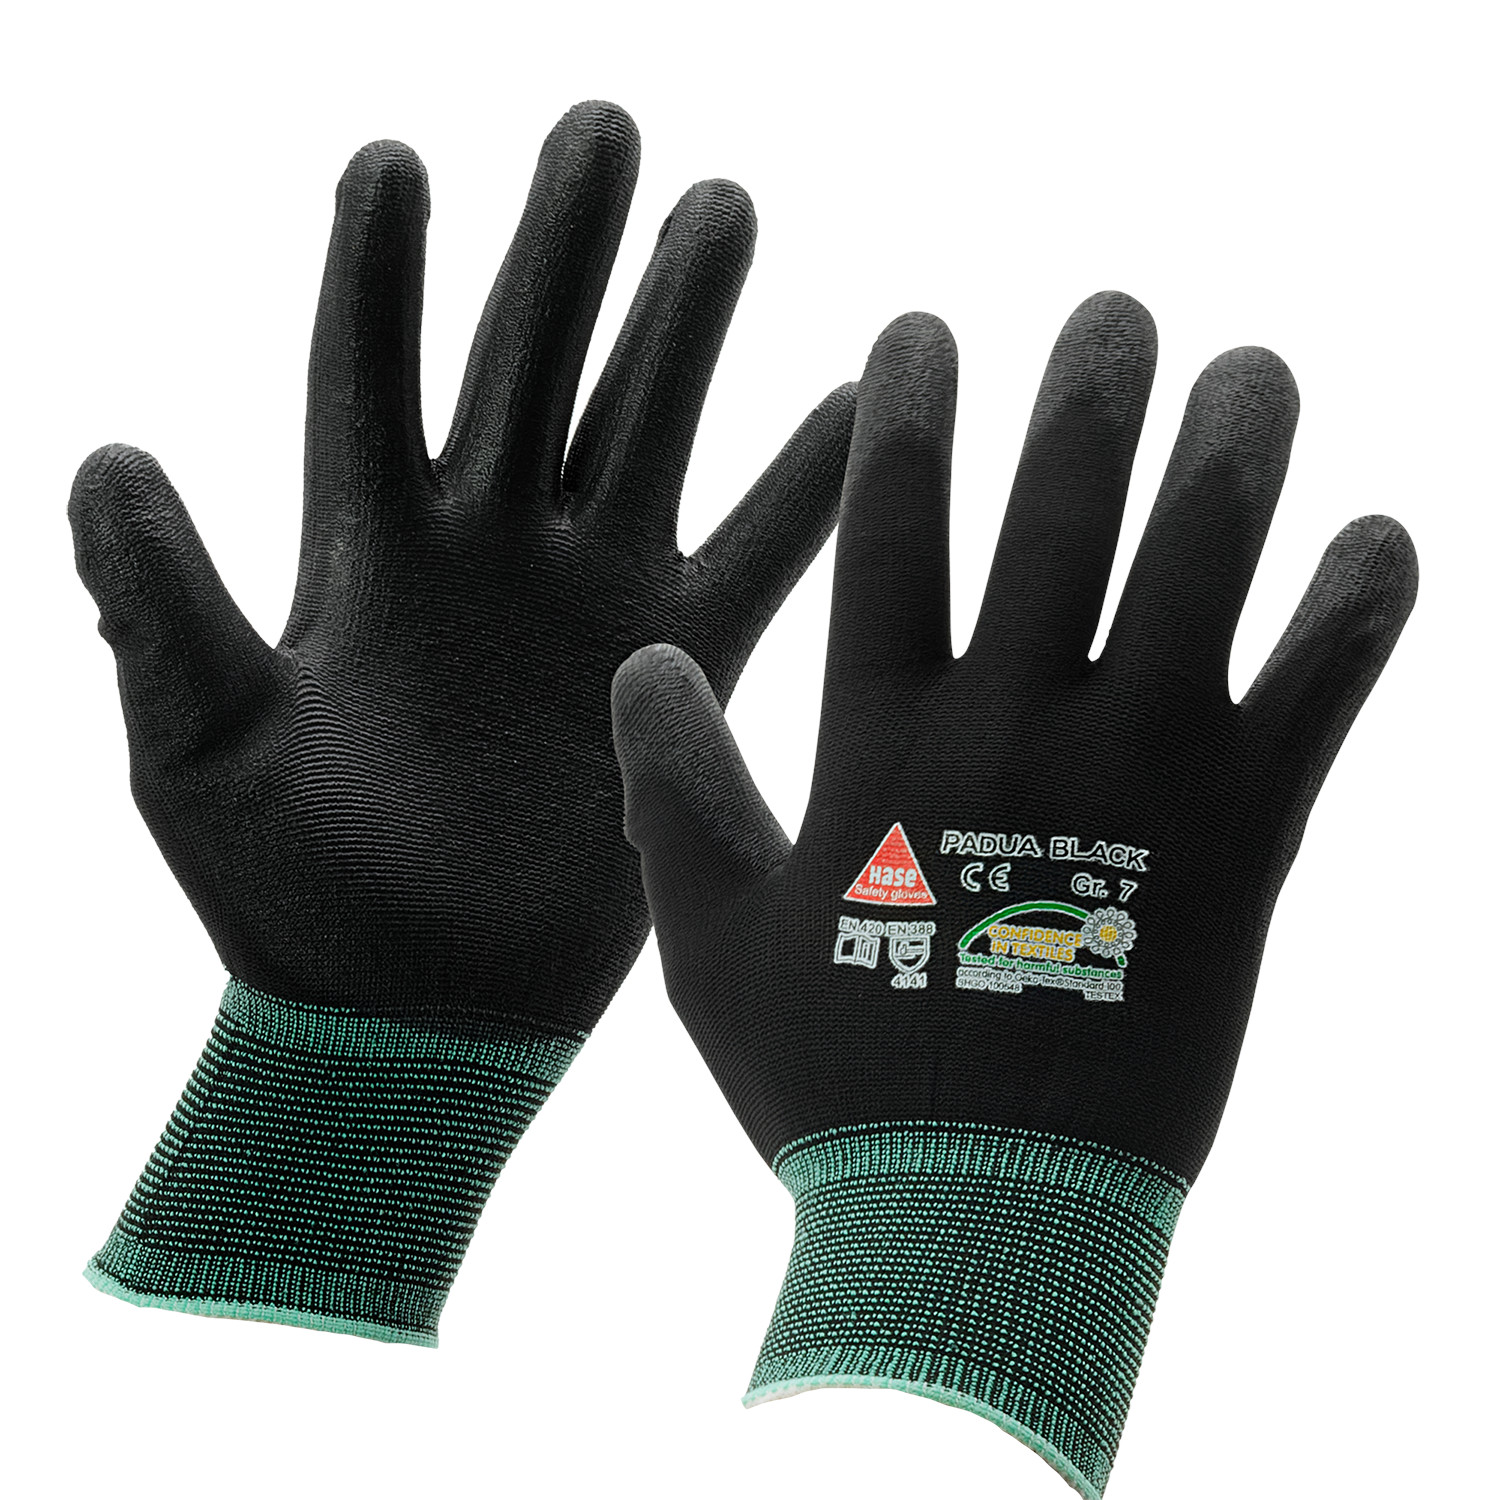 HASE Handschuh PADUA BLACK Gr. 7 in Schwarz